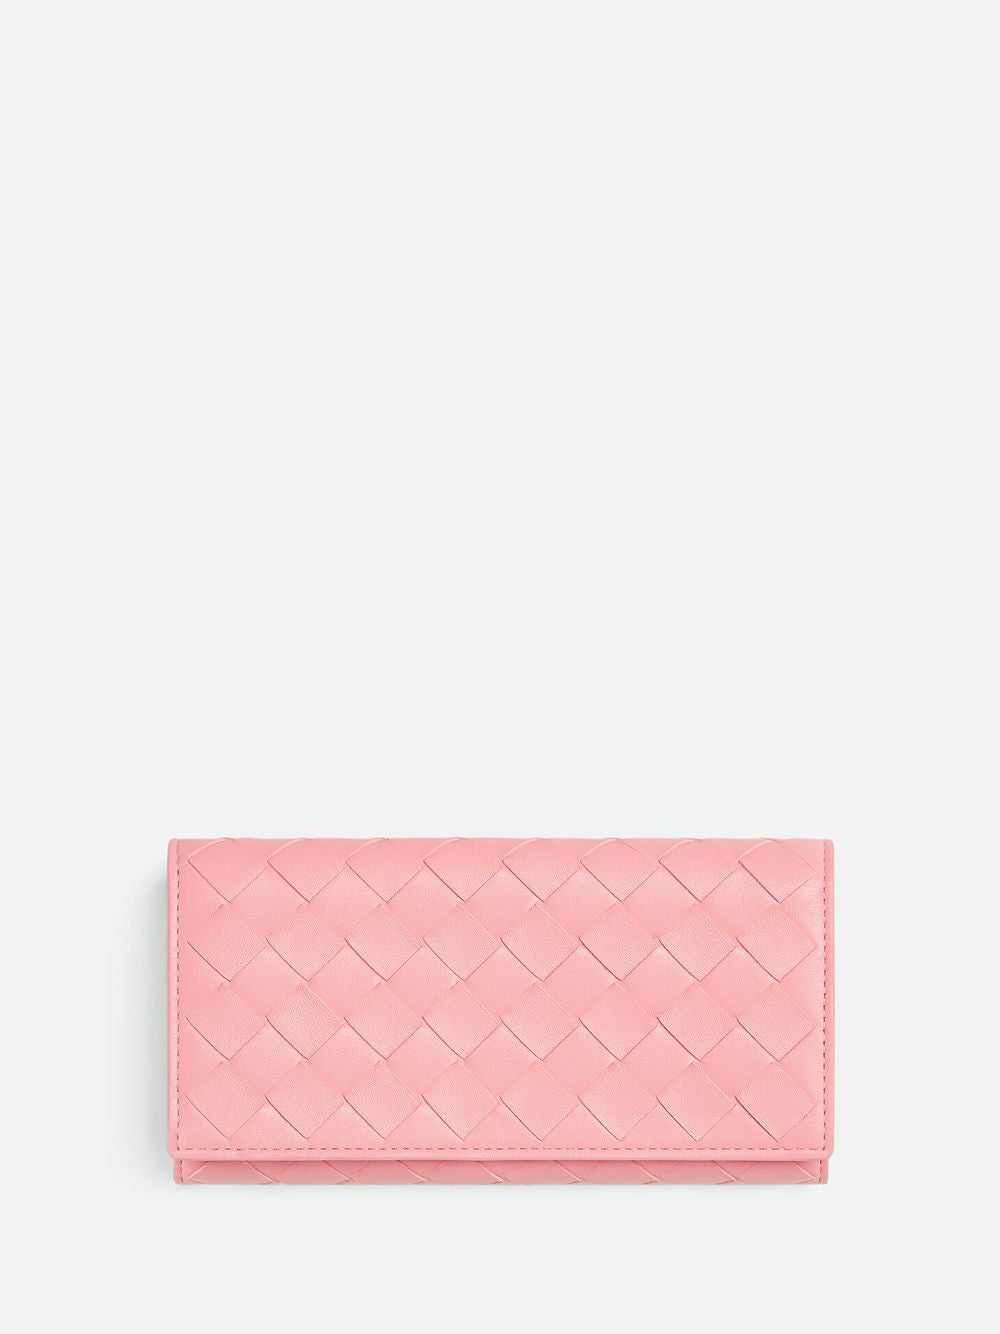 محفظة جلد نابا باللونين الوردي والبنفسجي للنساء، مجموعة SS24